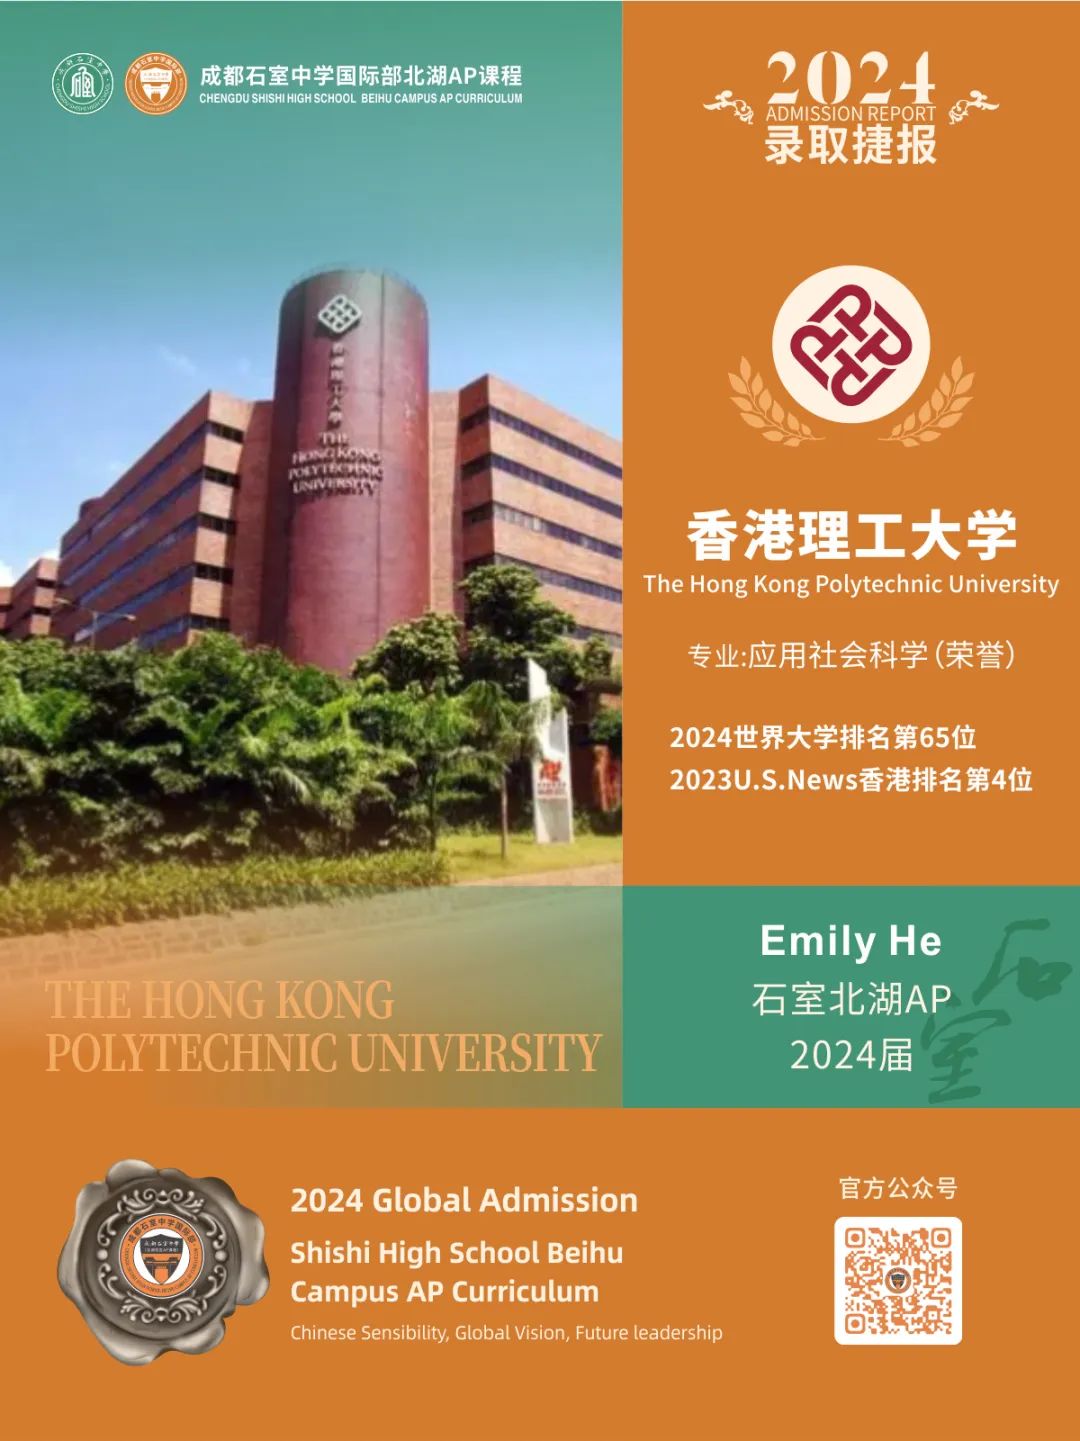 成都石室中学国际部香港方向申请录取